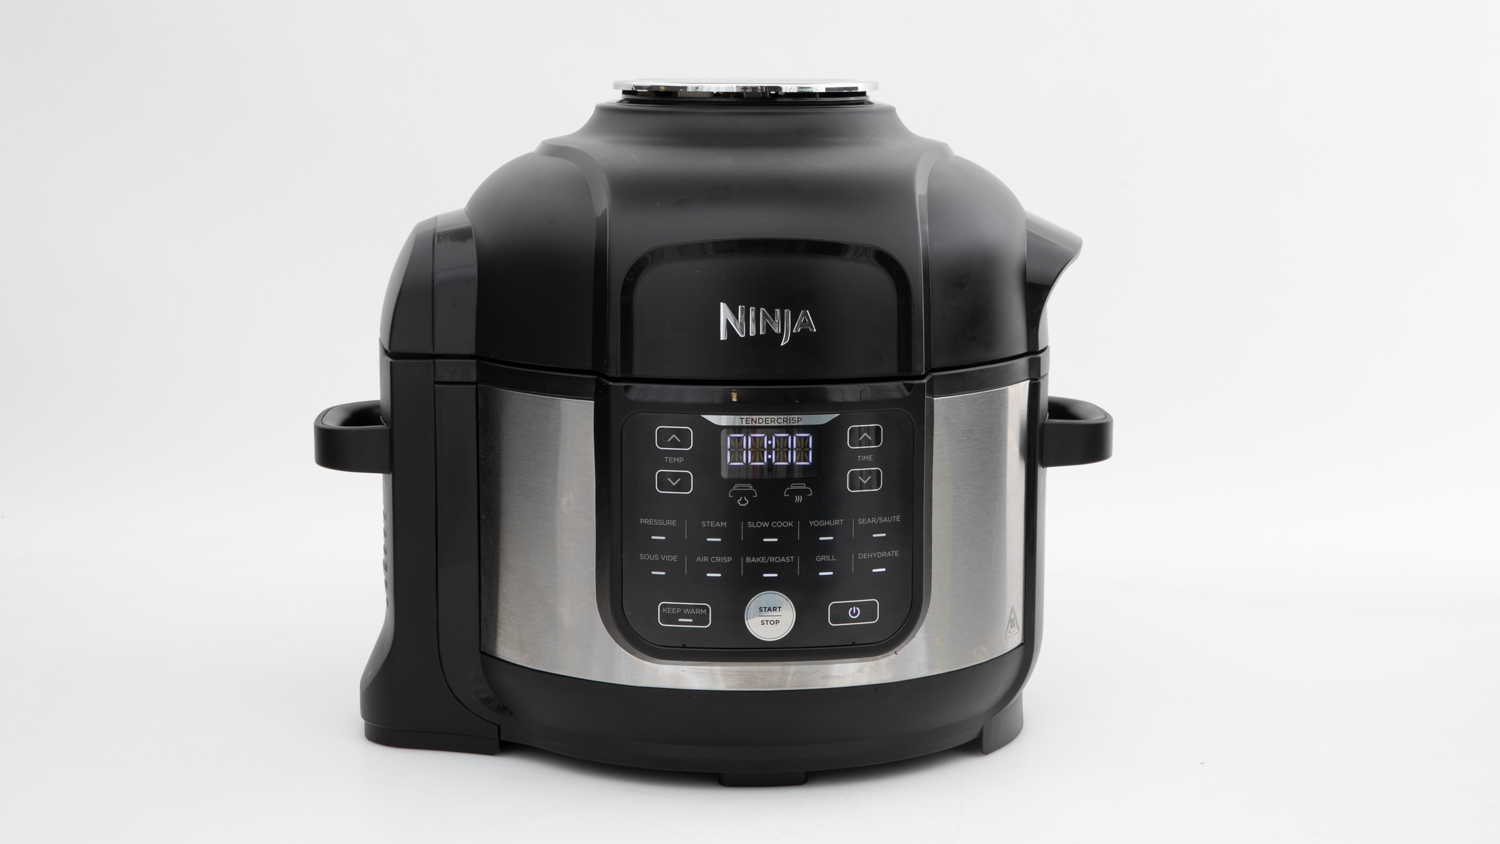 Ninja Foodi Multi Cooker & Reviews